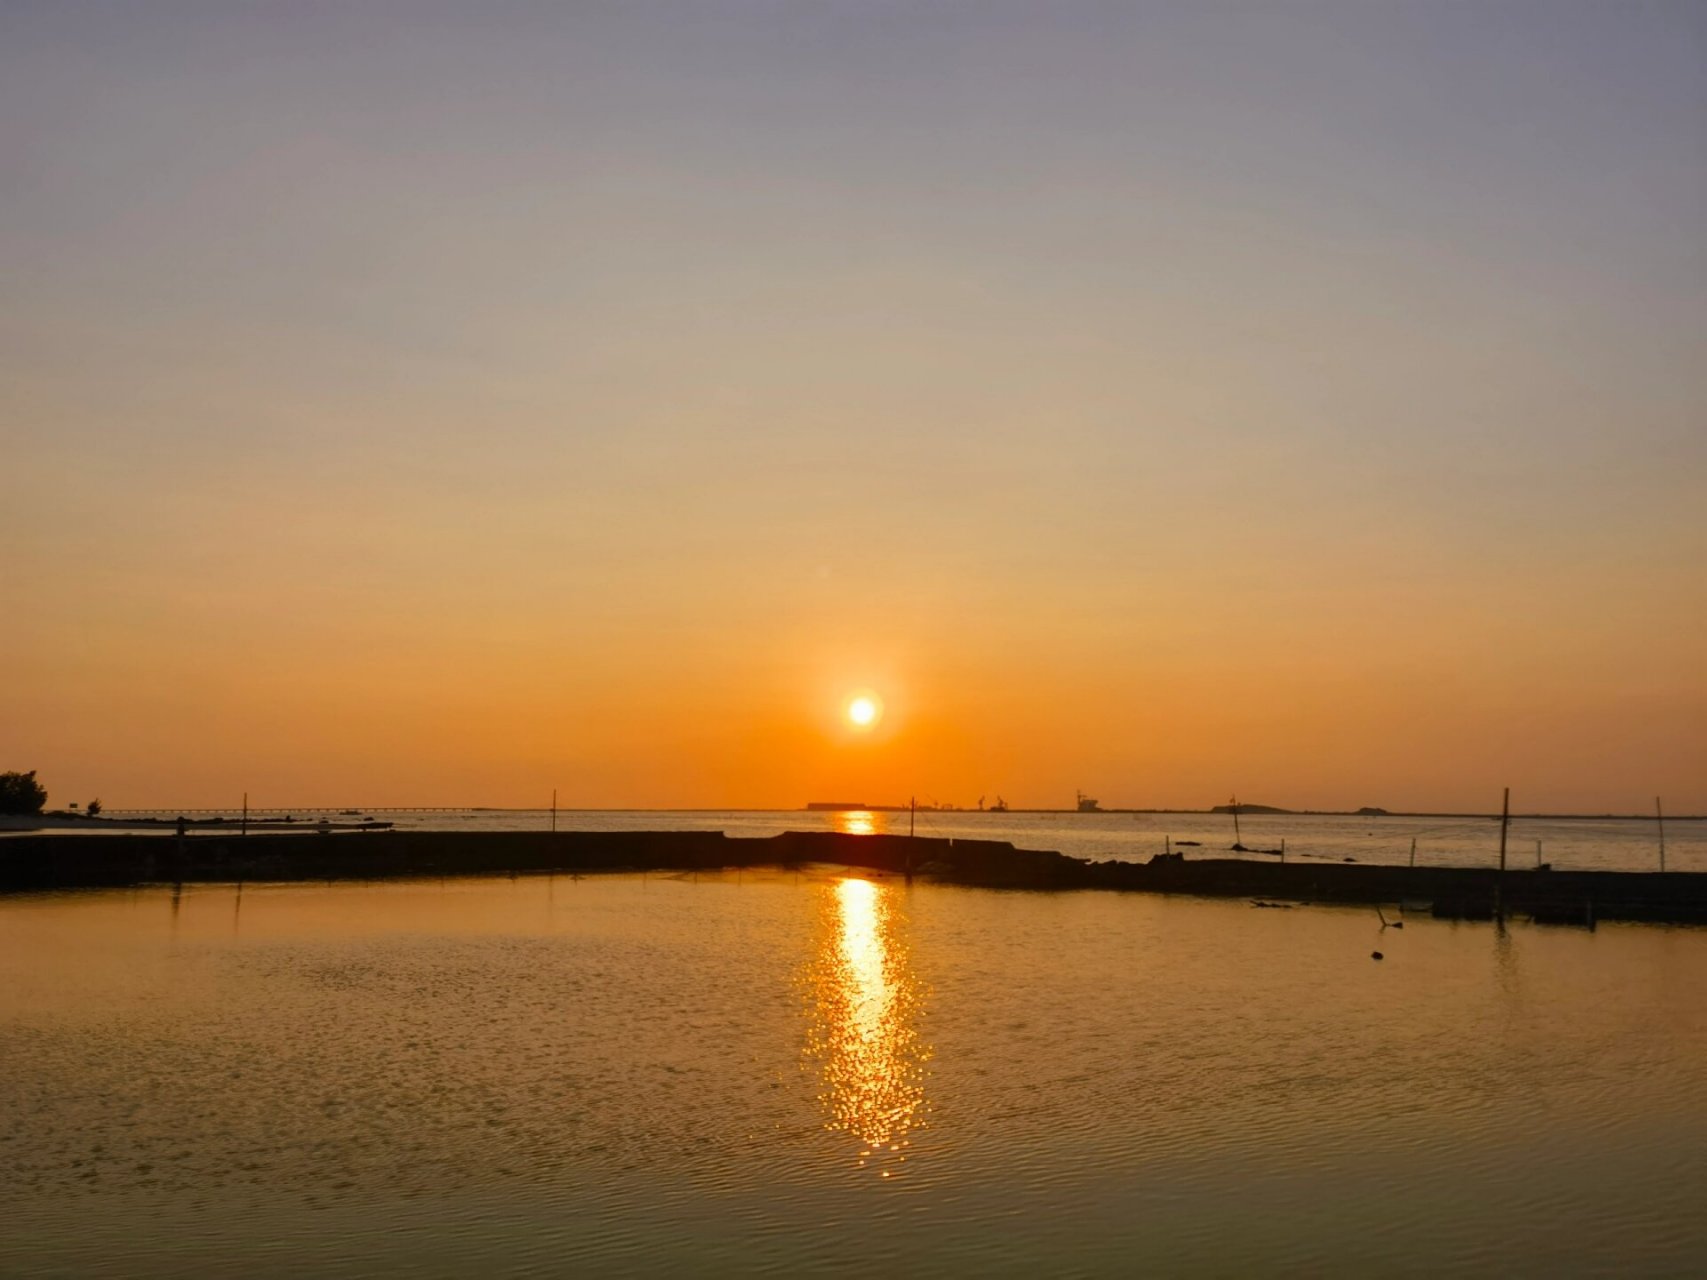 三娘湾风景区 96亮点特色: 三娘湾位于中国广西钦州市钦南区犀牛脚